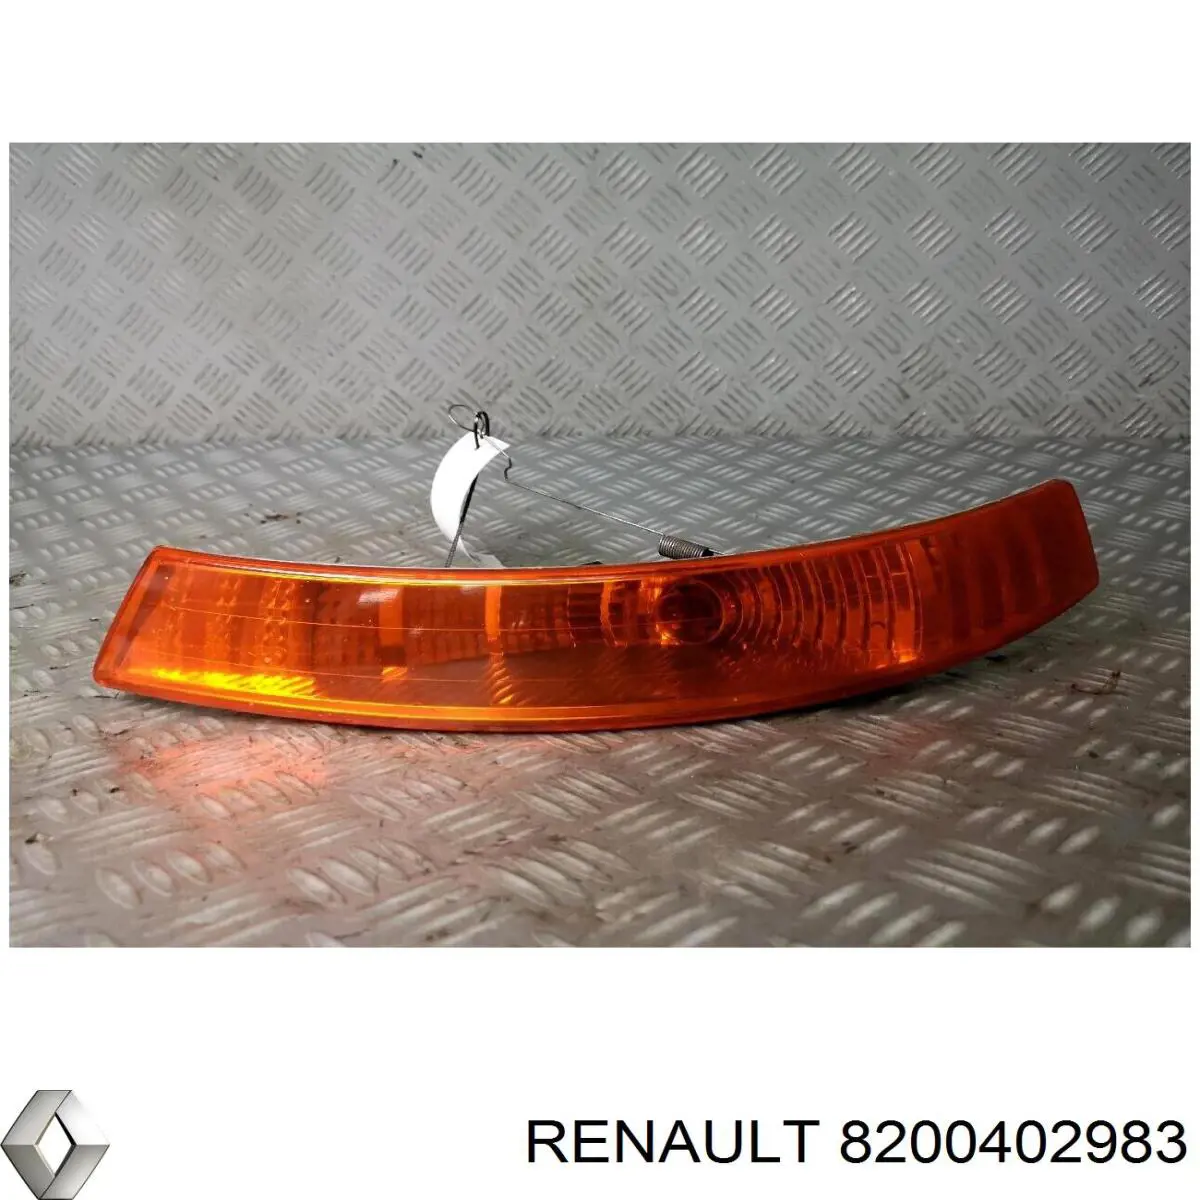 8200402983 Renault (RVI) pisca-pisca esquerdo